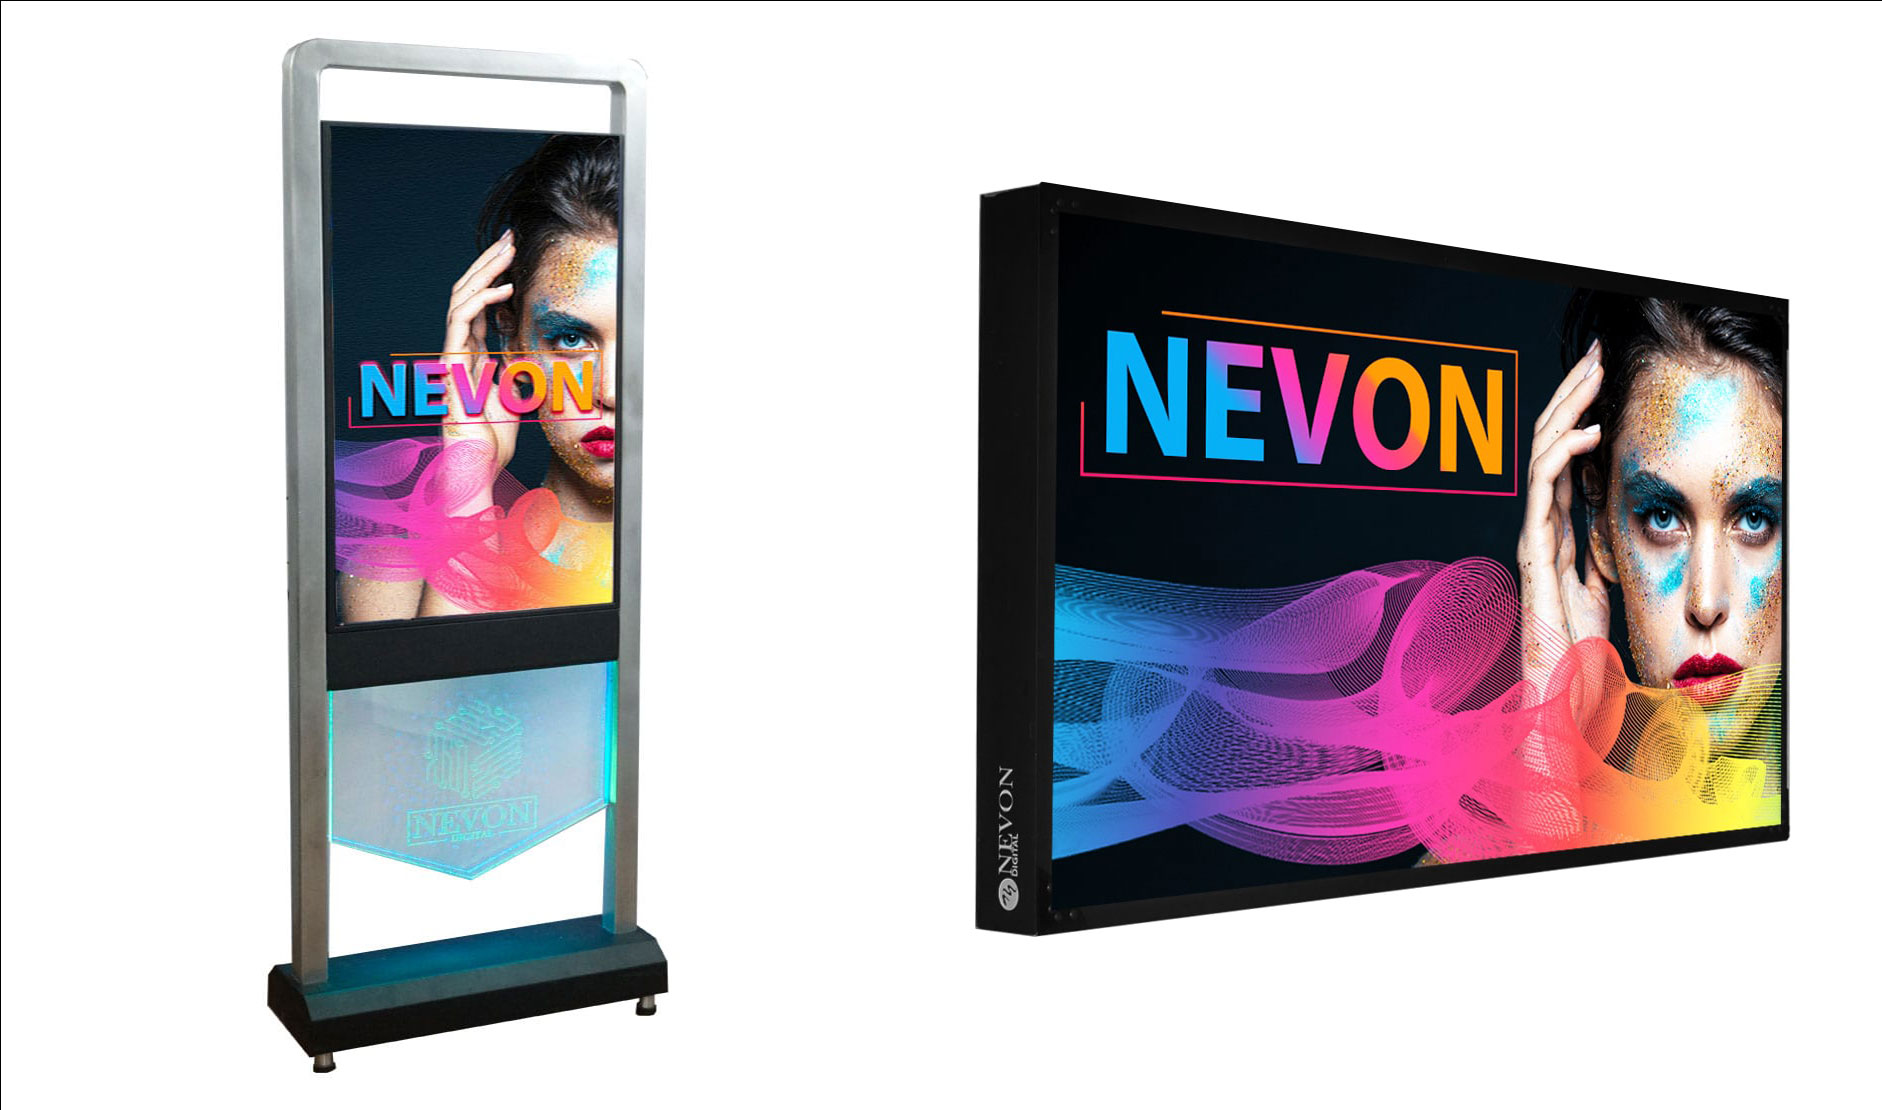 Nevon displays